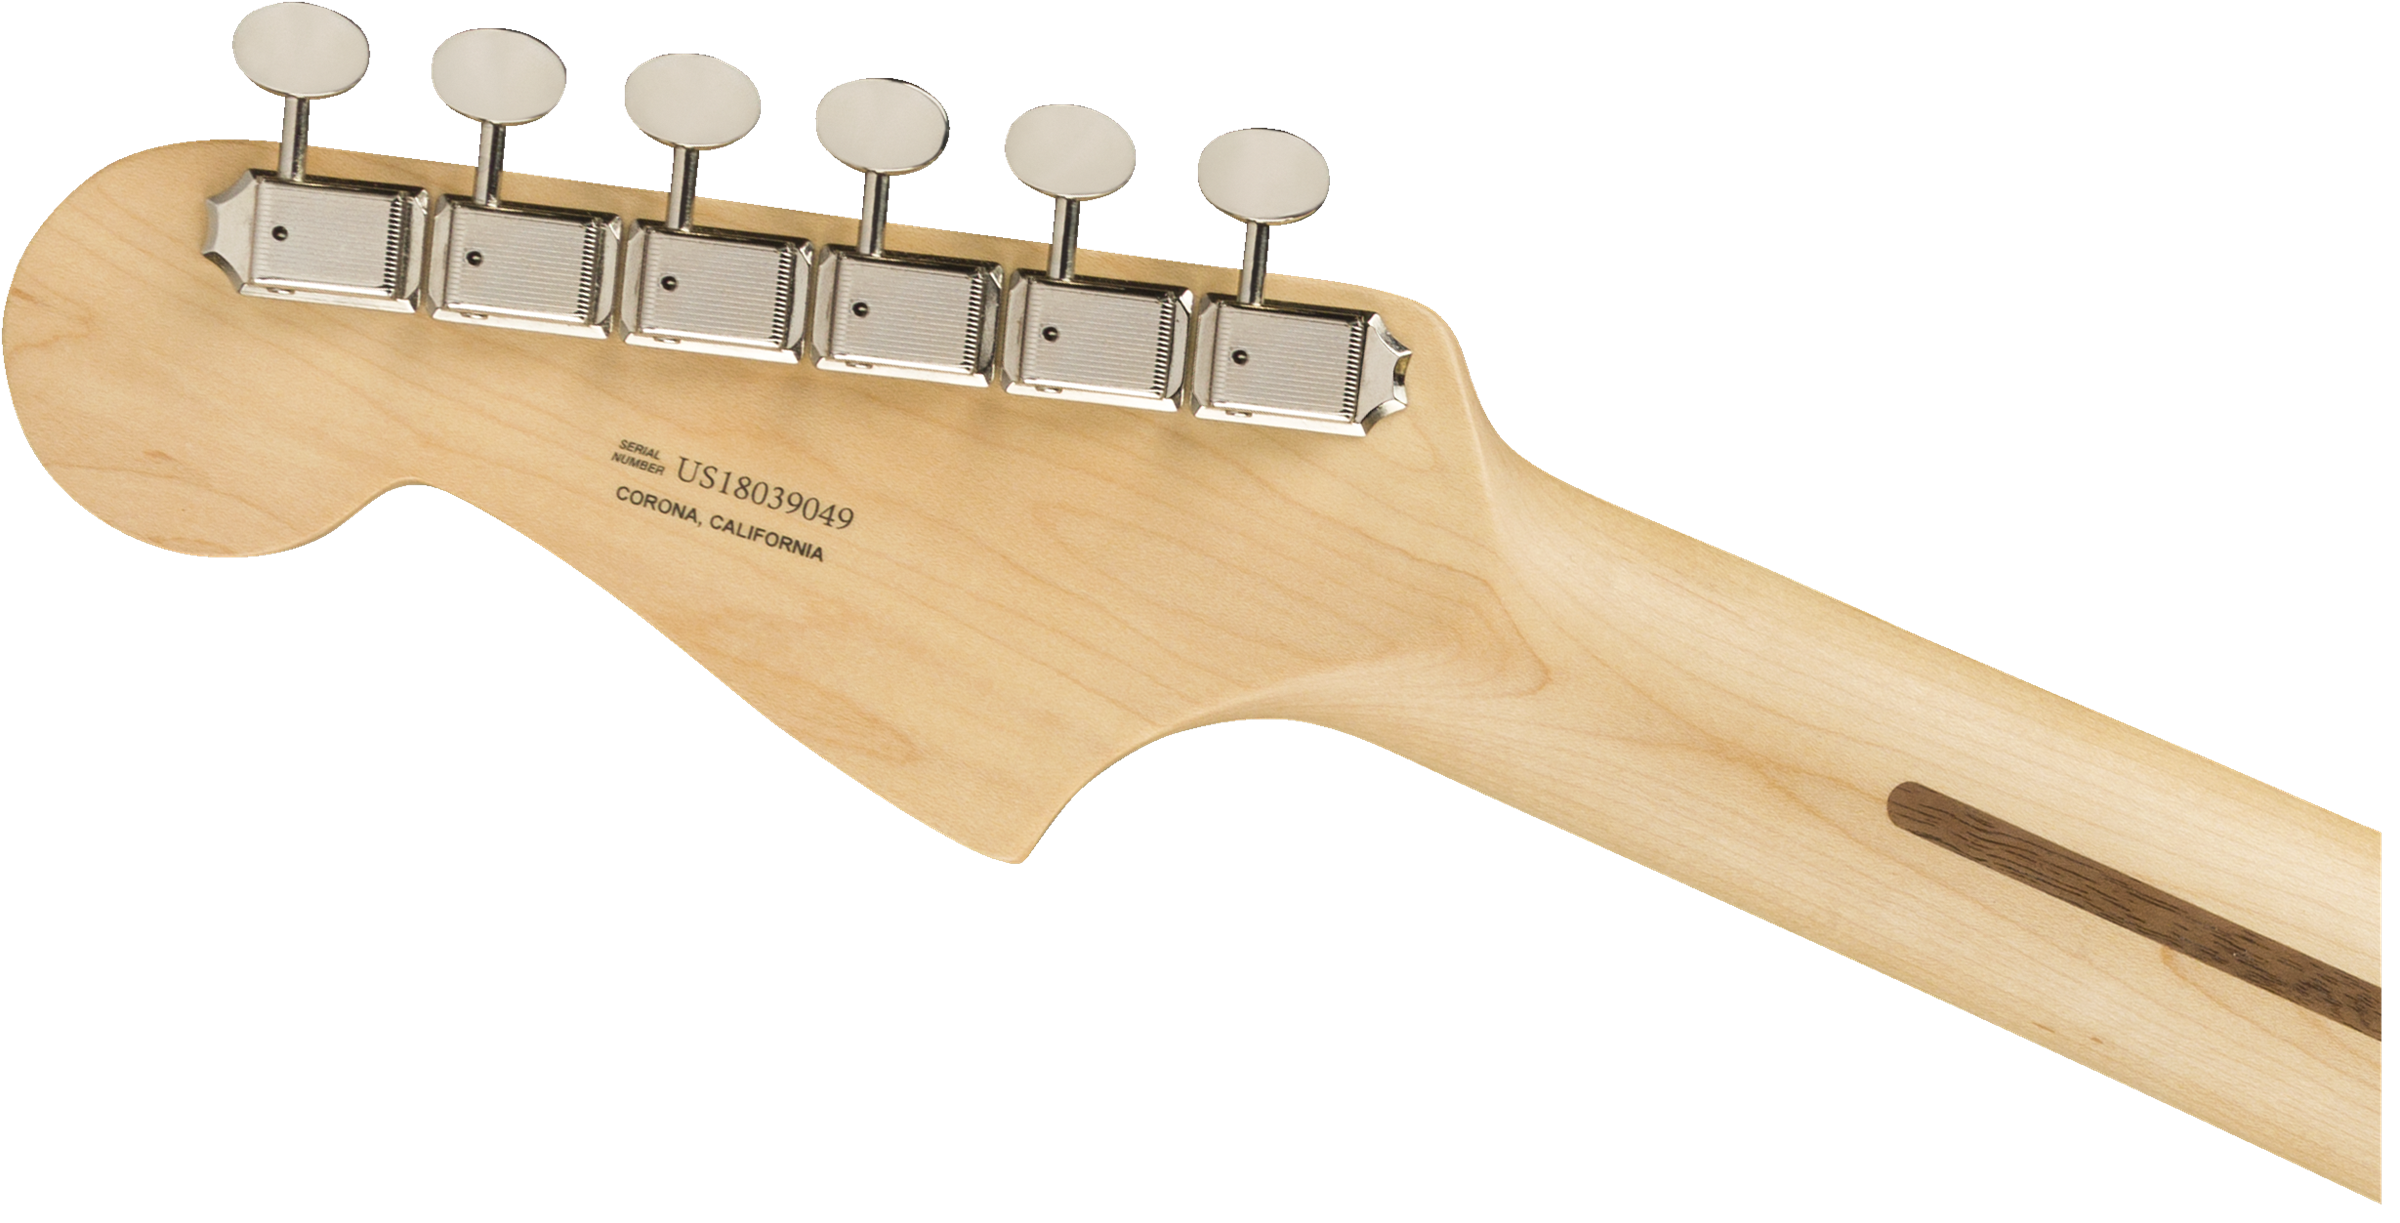 Fender American Performer Jazzmaster Rosewood Fingerboard - Vintage White 0115210341